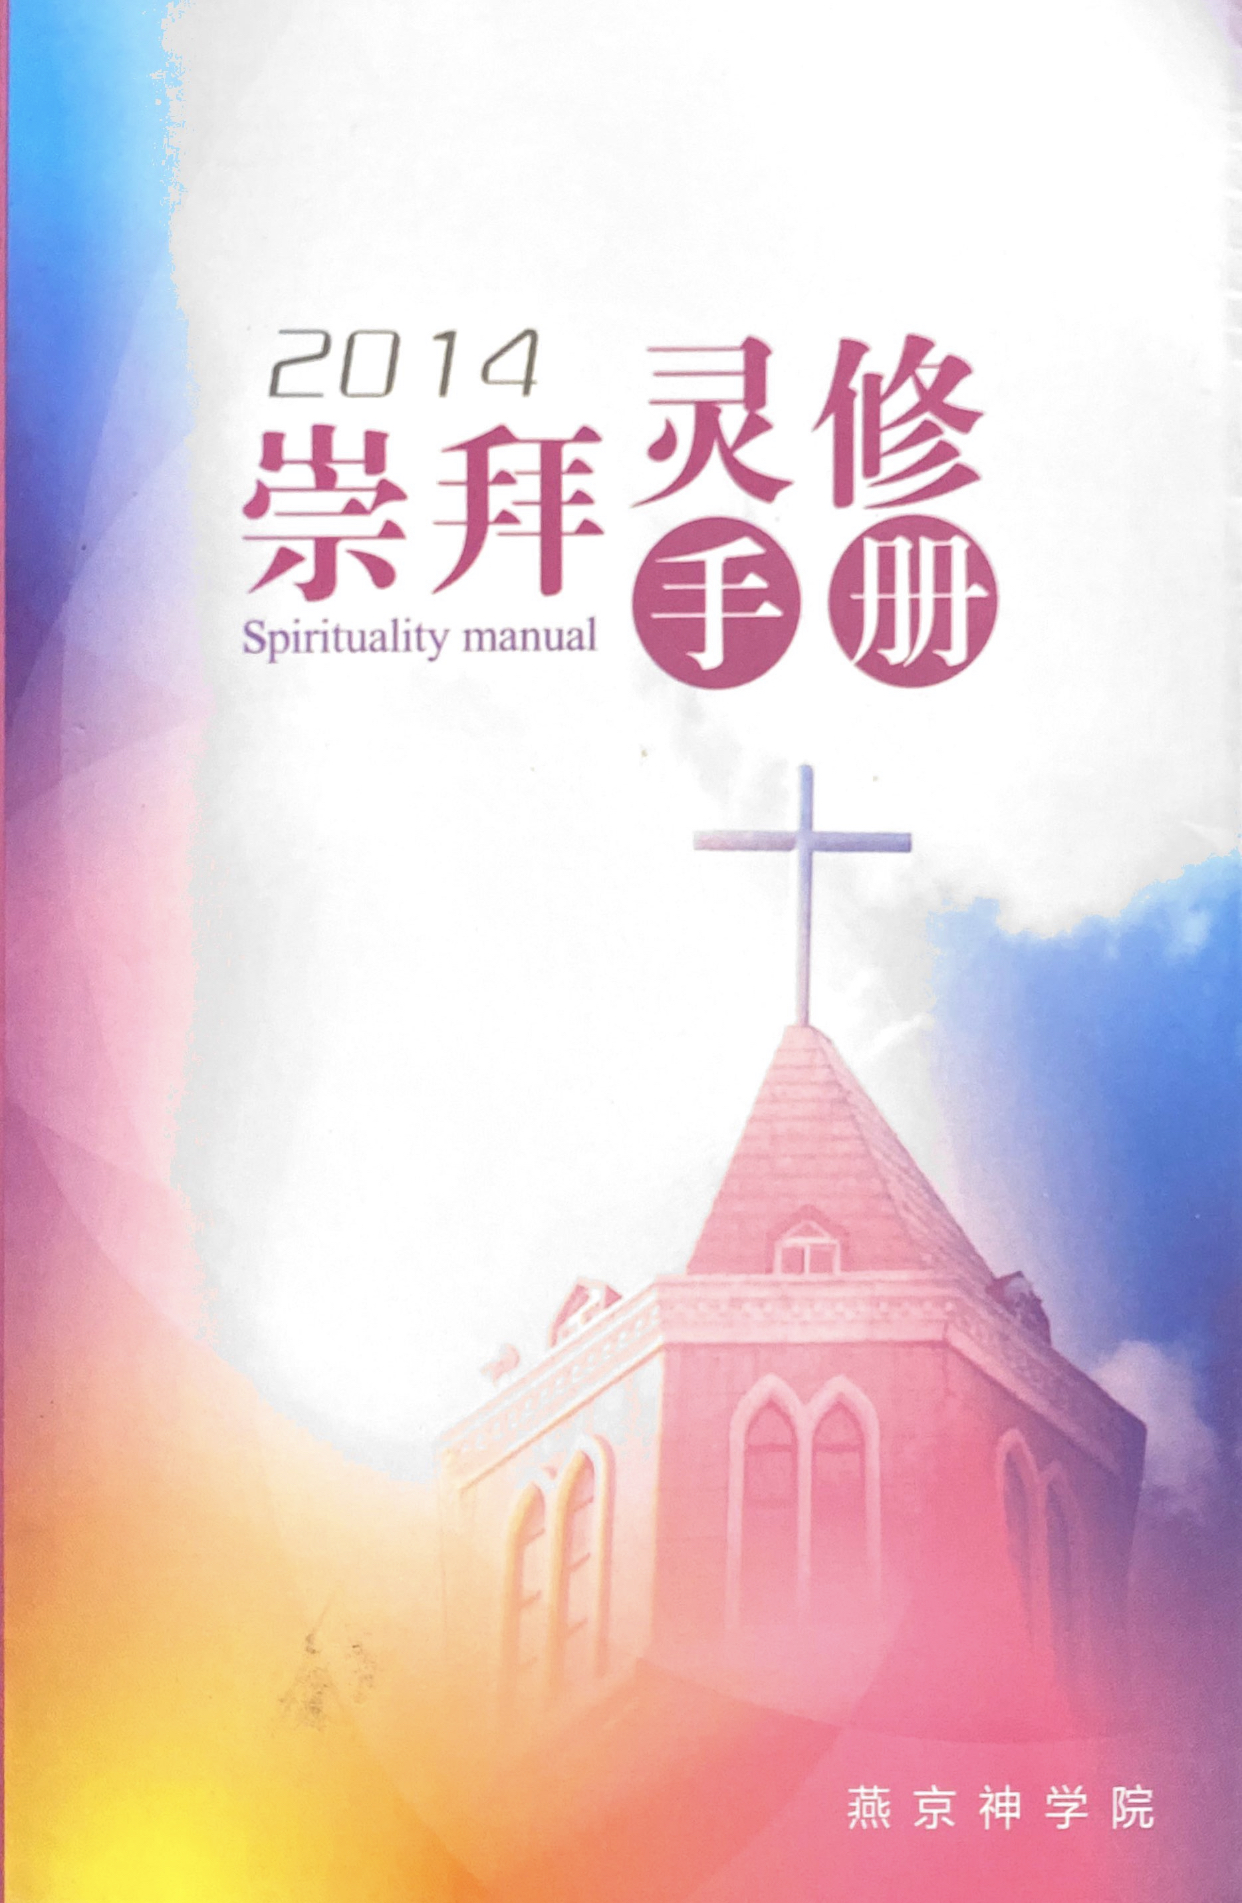 Cover of 崇拜靈修手冊 2014